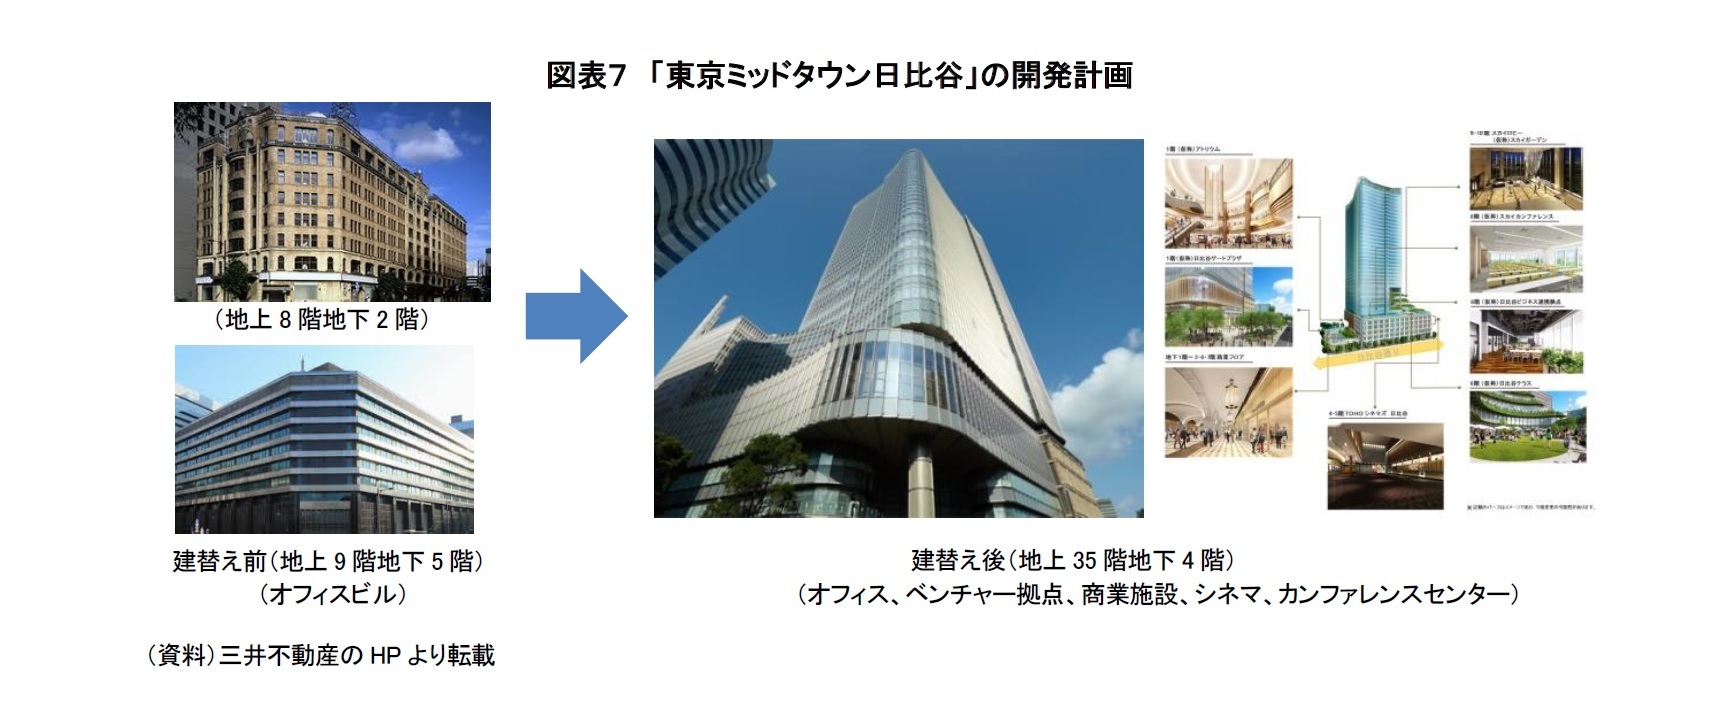 （図表７）「東京ミッドタウン日比谷」に開発計画